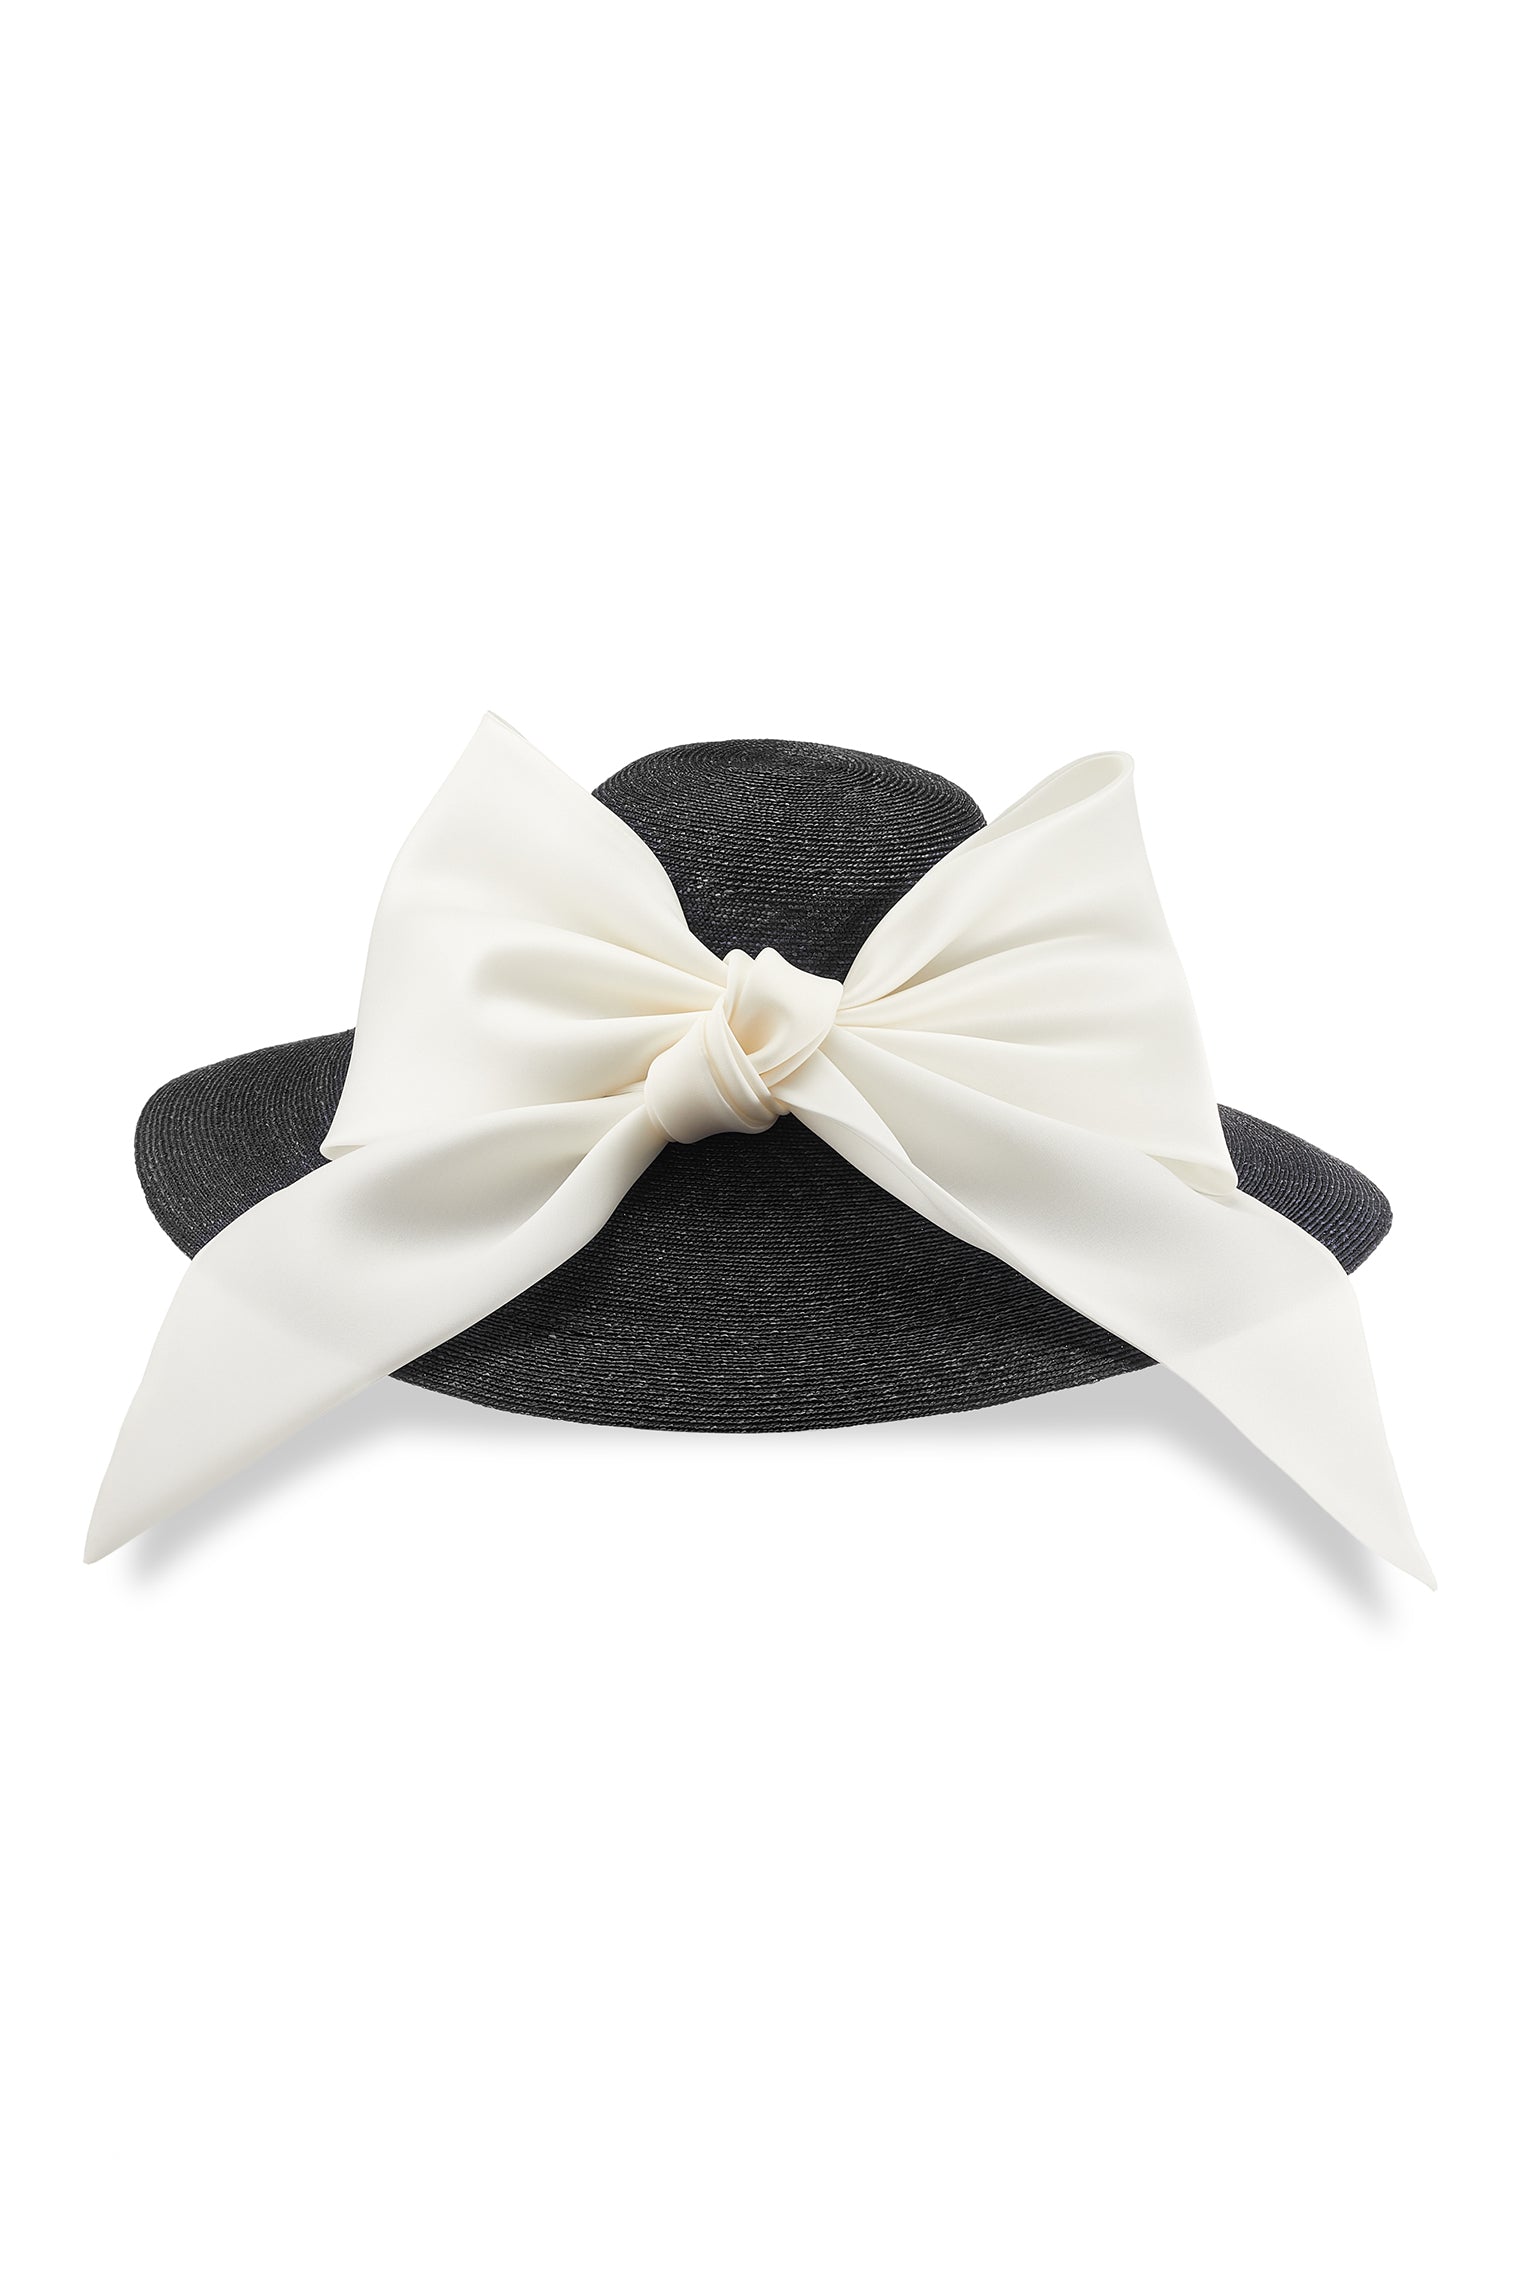 Darjeeling Black Wide Brim Hat - New Season Women's Hats - Lock & Co. Hatters London UK